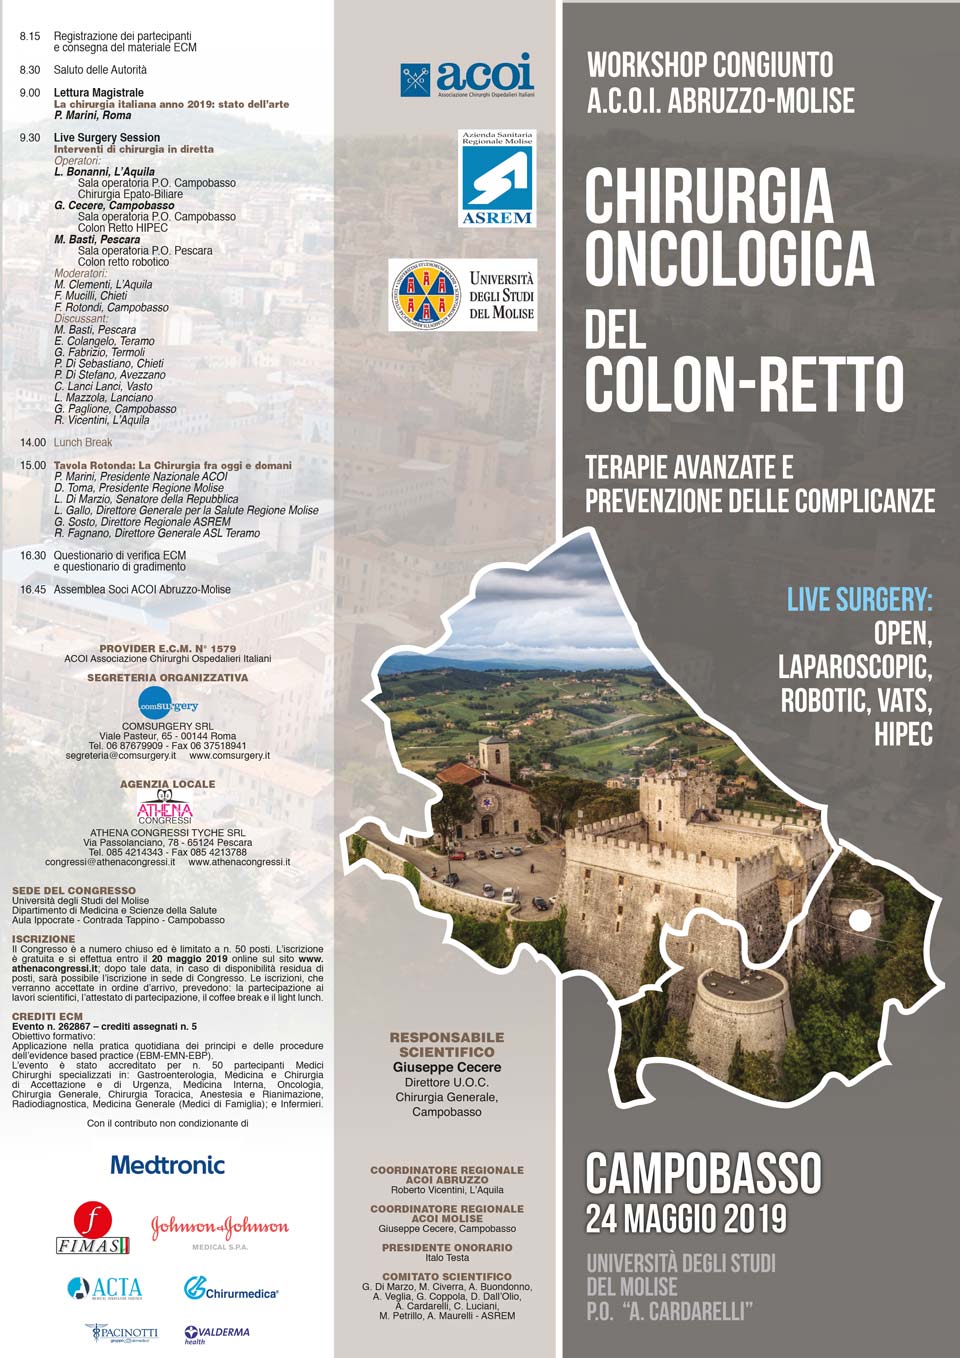 Chirurgia oncologica del colon-retto - Workshop congiunto A.C.O.I. Abruzzo Molise